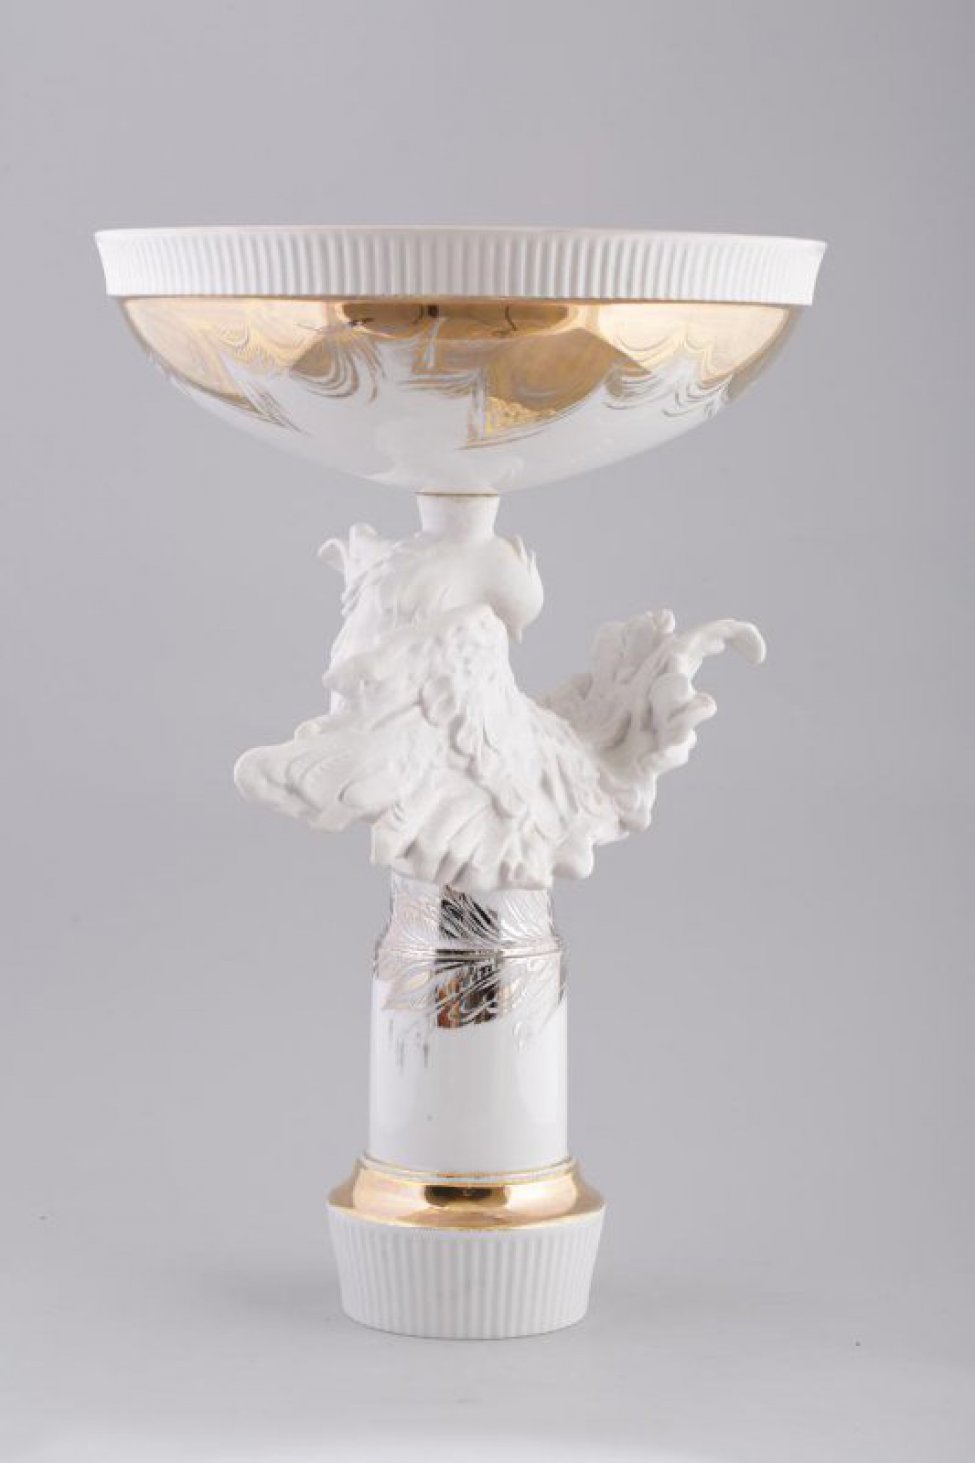 Ваза круглая на высокой ножке со скульптурной фигурой белого голубя с распущенными крыльями и хвостом; верхняя часть вазы декорирована золоченым растительным орнаментом.